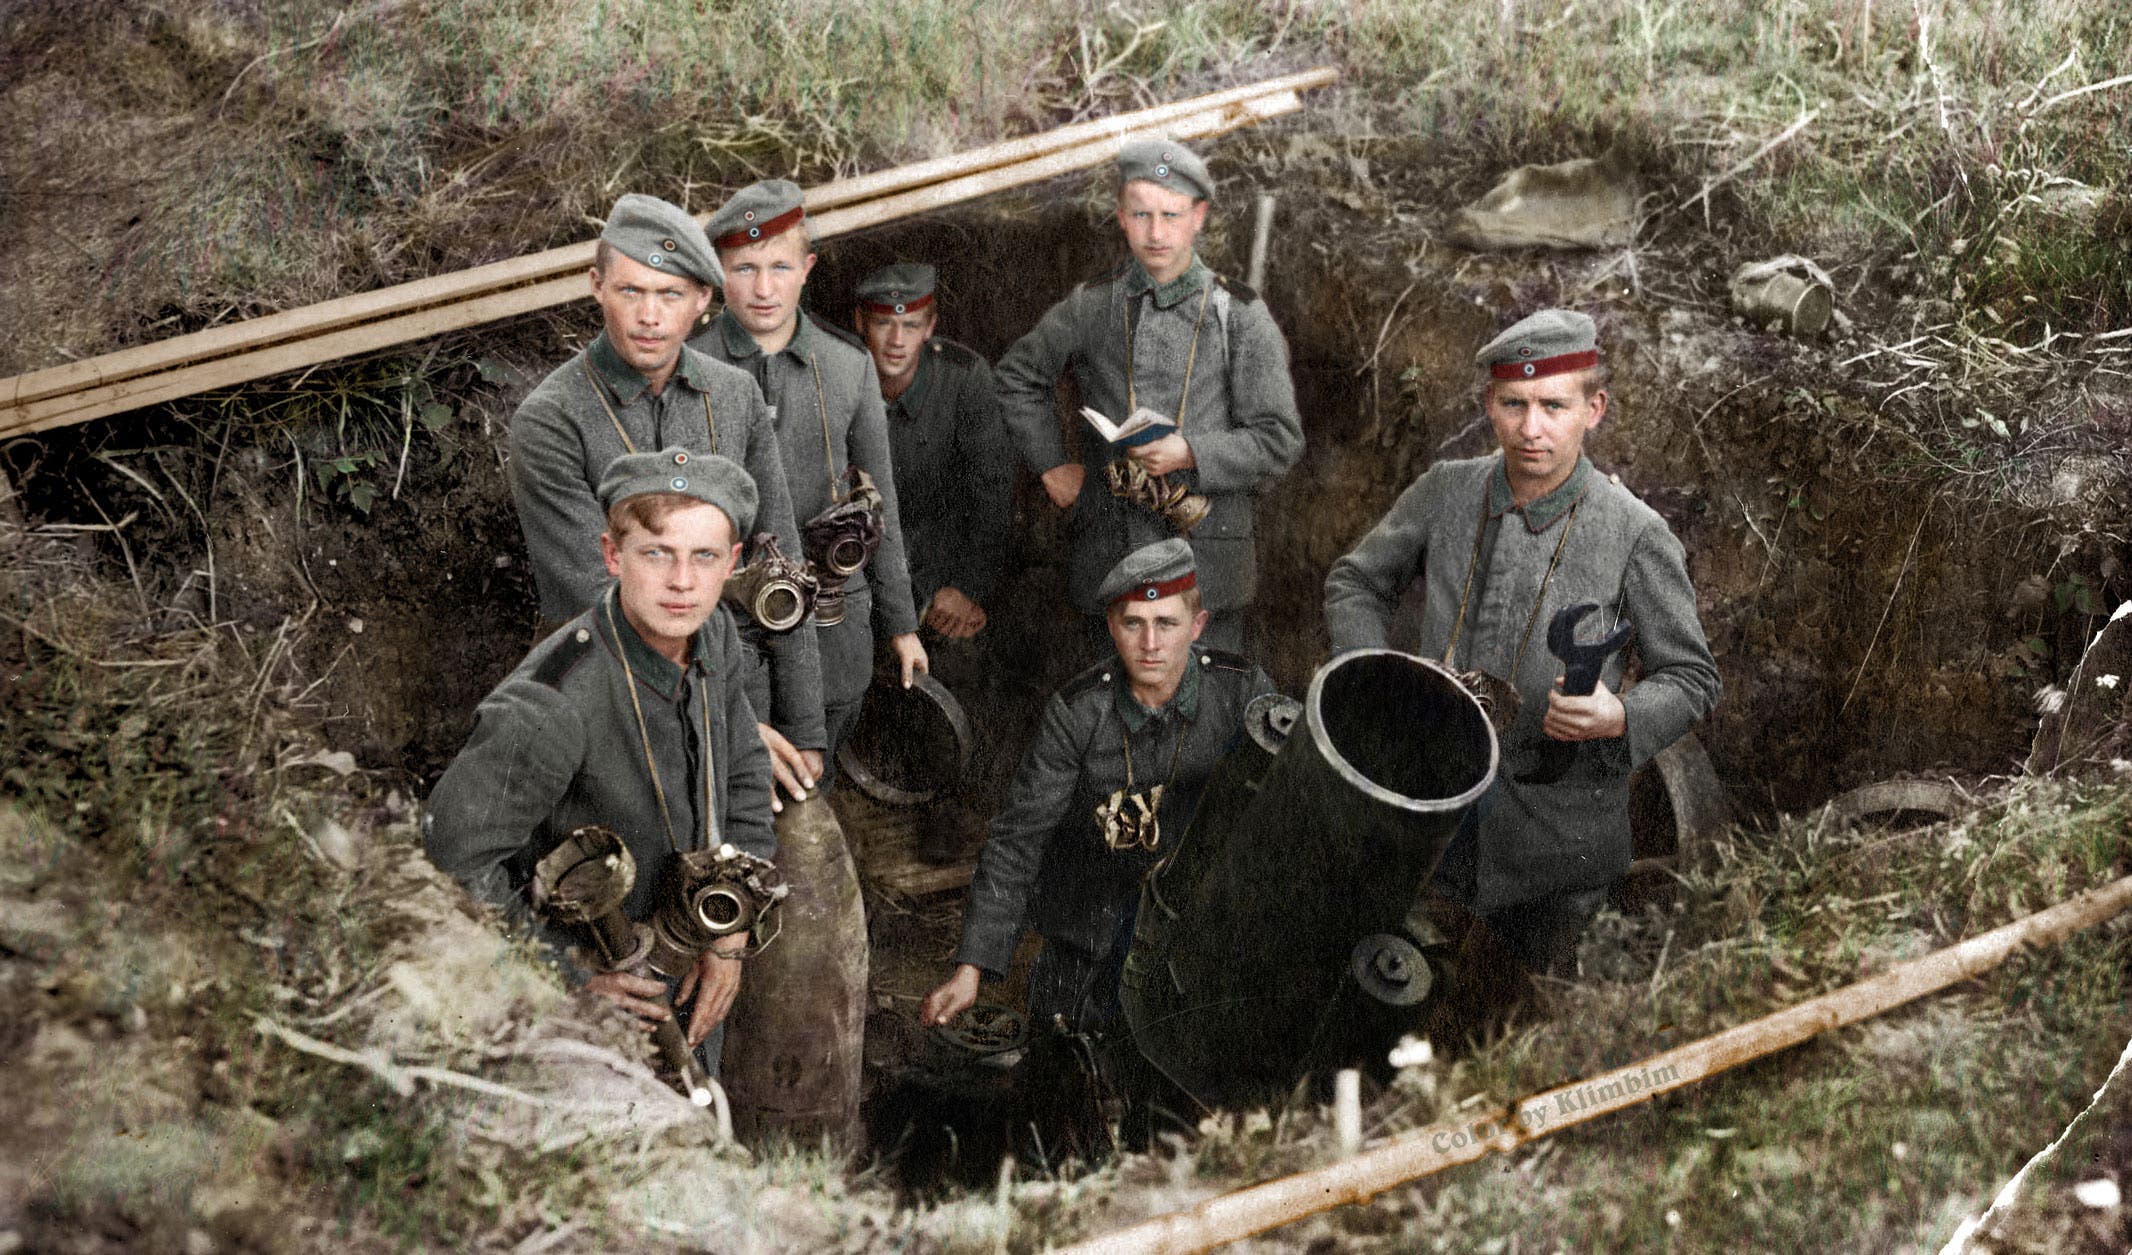 صورة ملونة اعتمادا على التقنيات الحديثة لجنود ألمان خلال الحرب العالمية الأولى